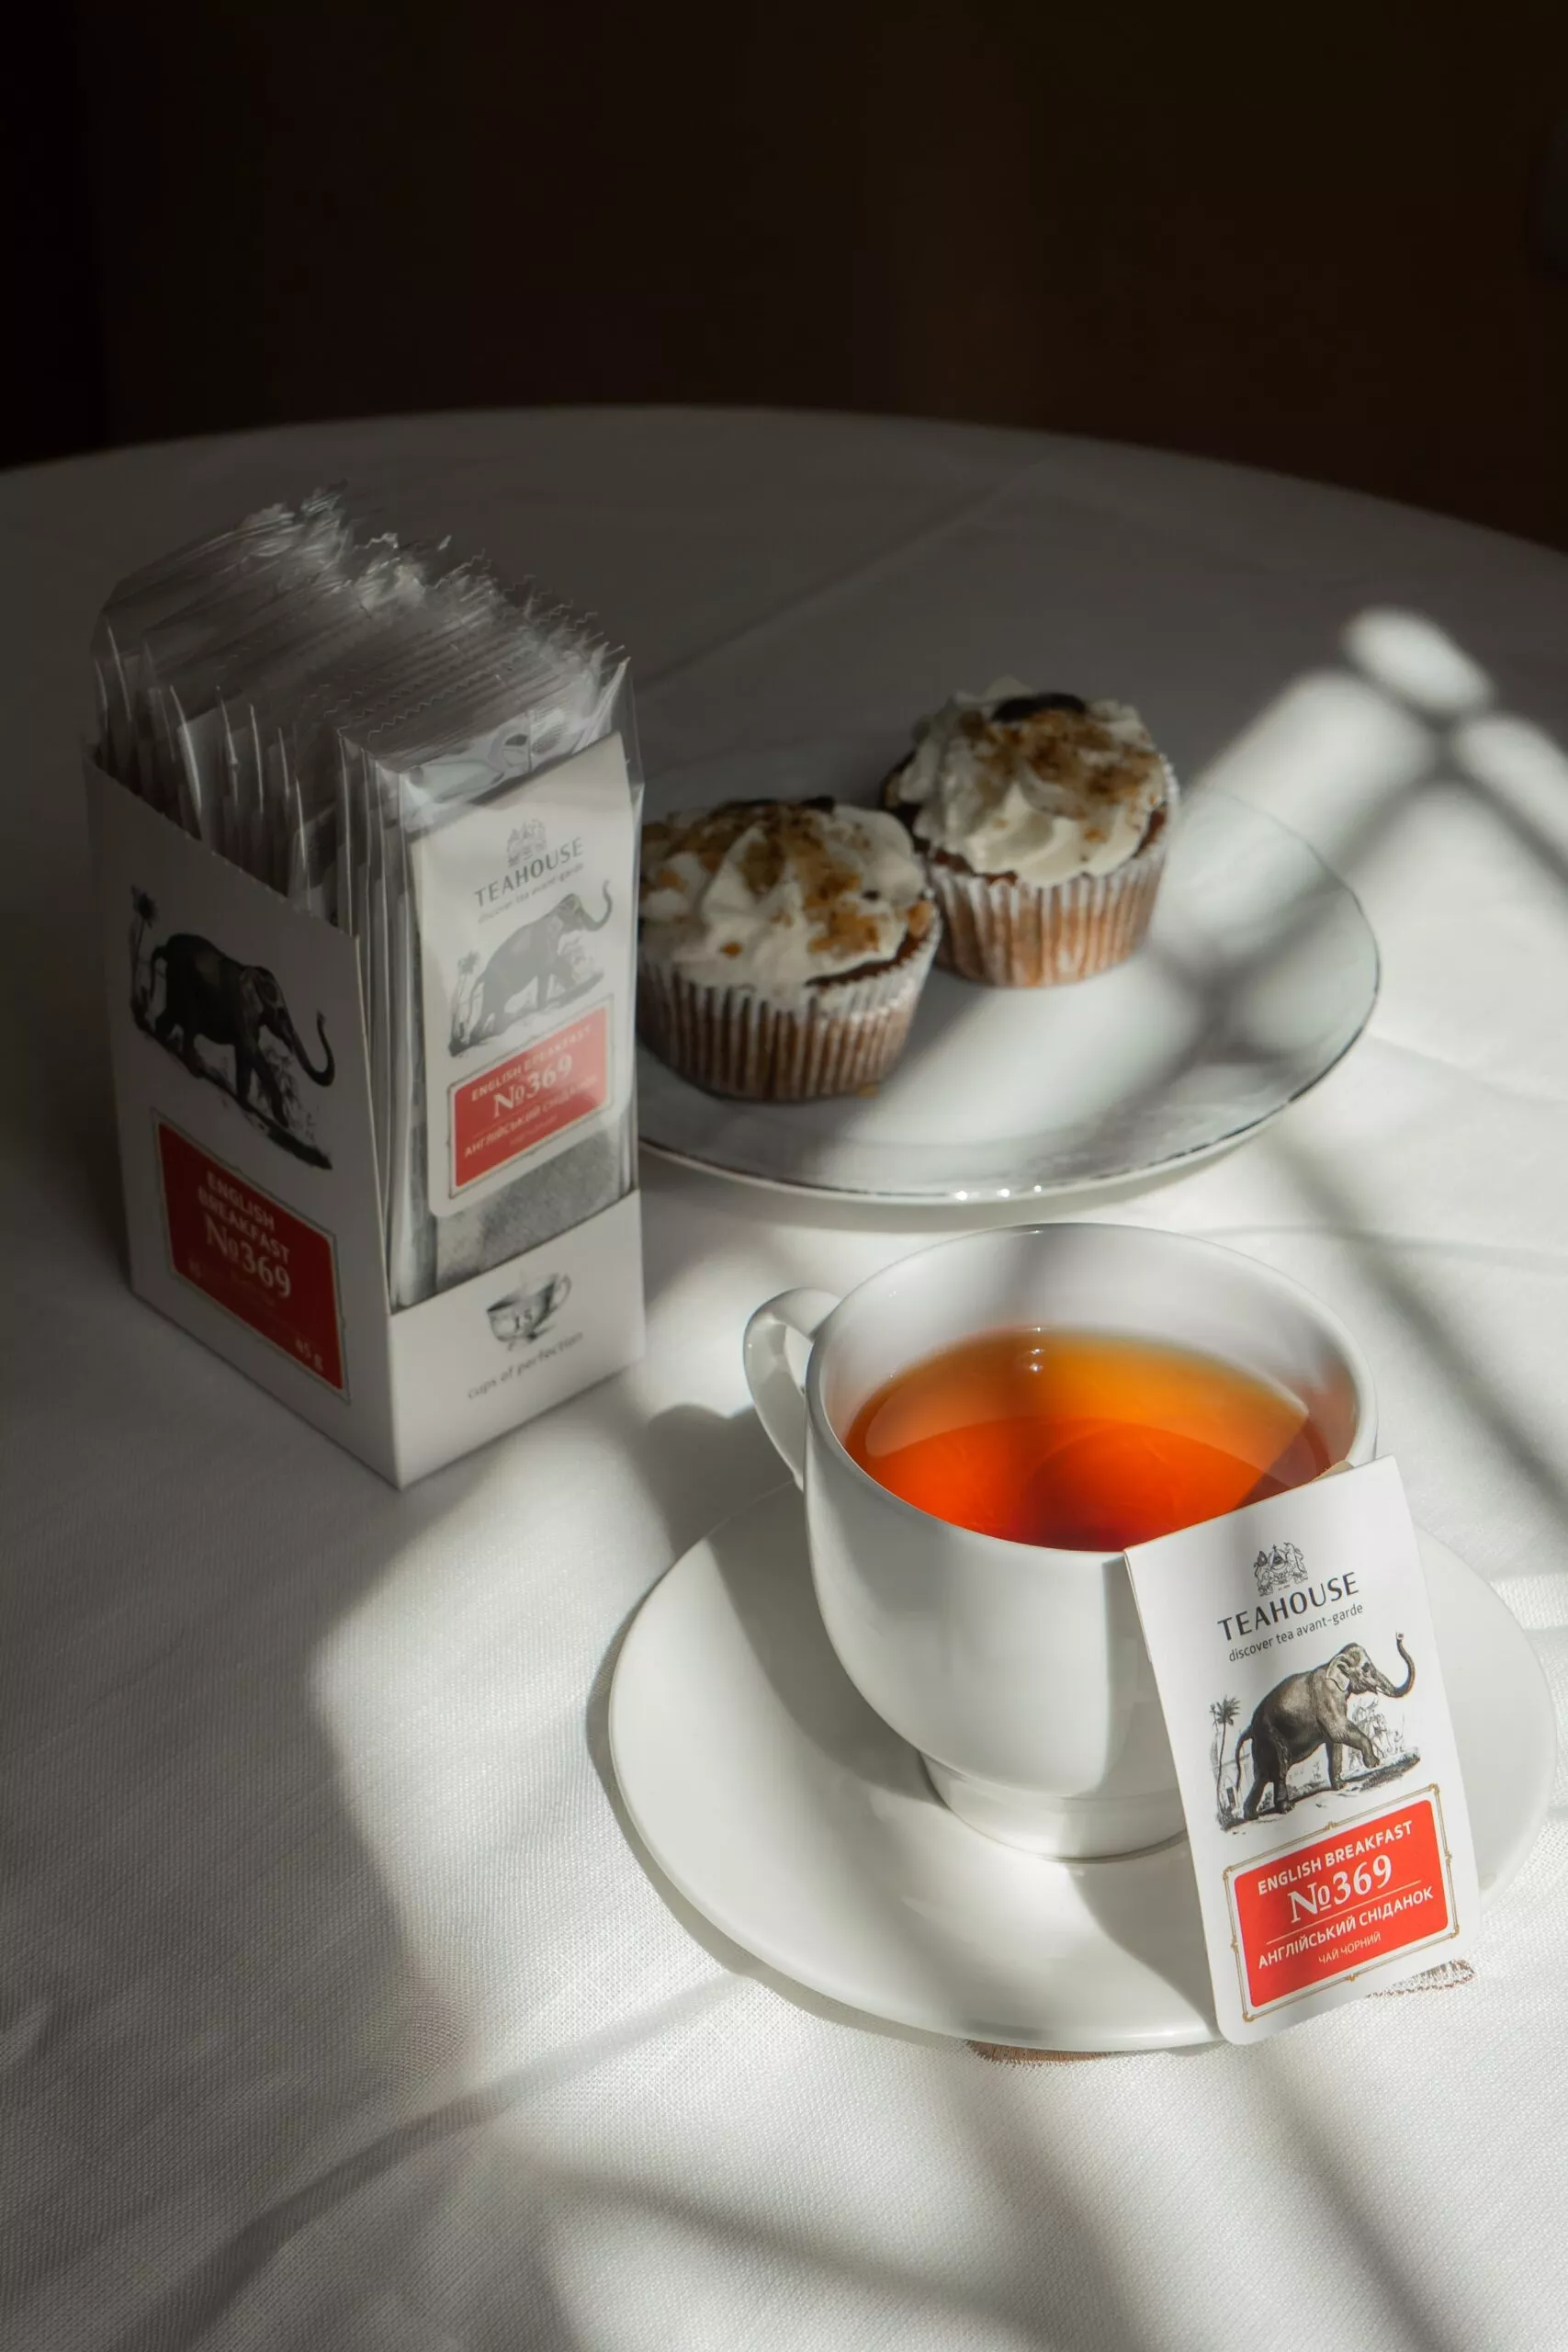 Чай порційний Teahouse Perfect Cup Англійський сніданок №369, 15 шт. x 3 г - фото 4